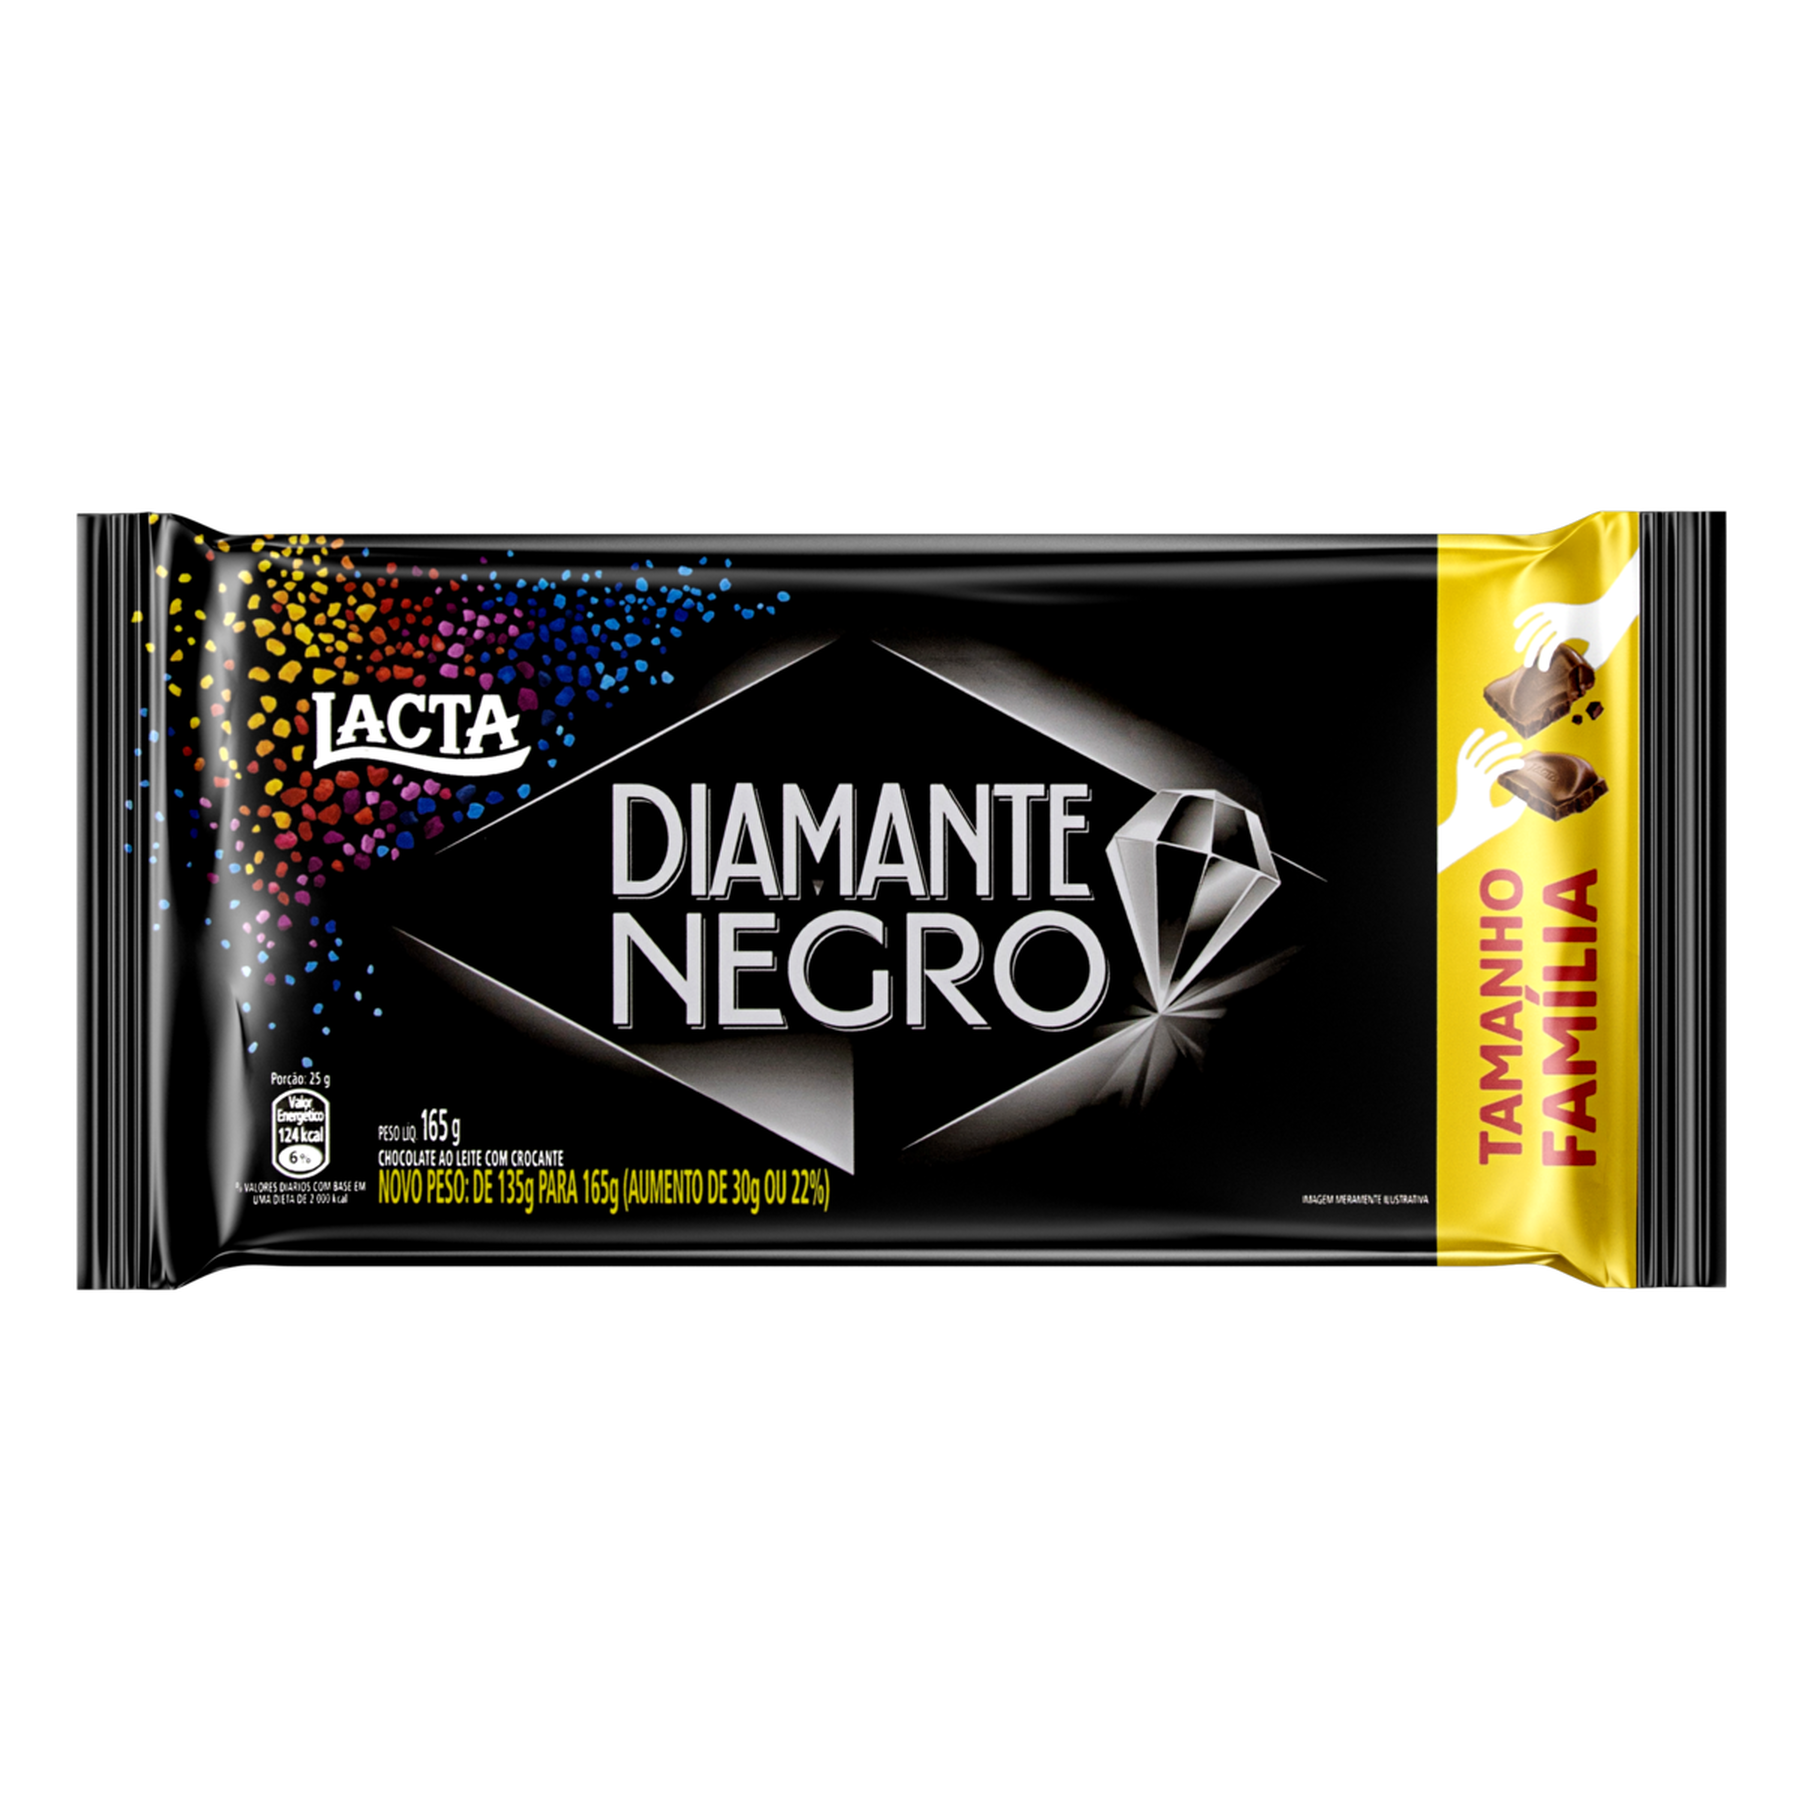 Chocolate ao Leite Lacta Diamante Negro Pacote 165g Tamanho Família